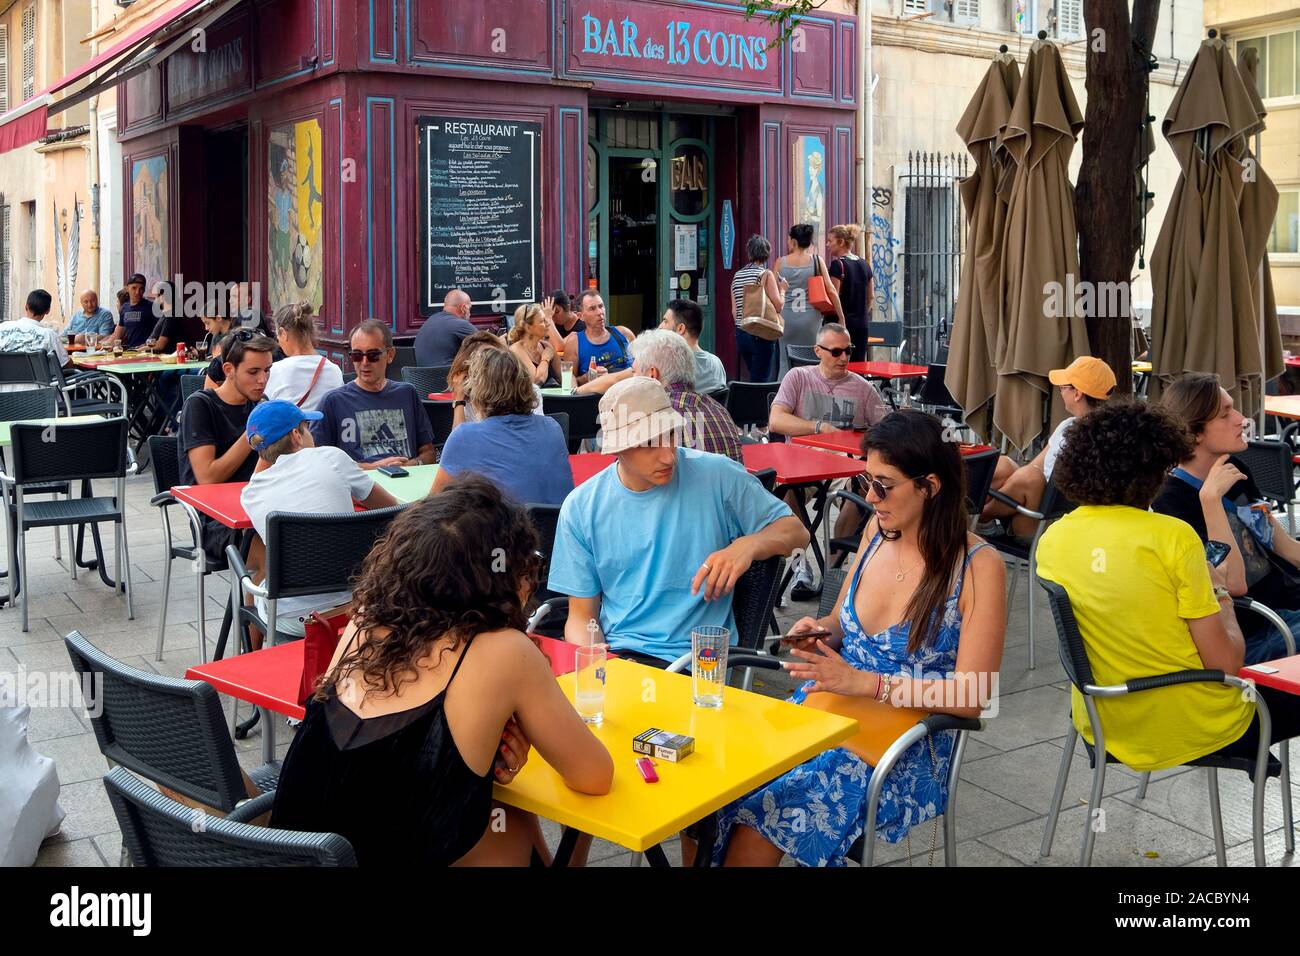 Bar des 13 monete, Le Panier district, Marsiglia Provence, Francia Foto Stock